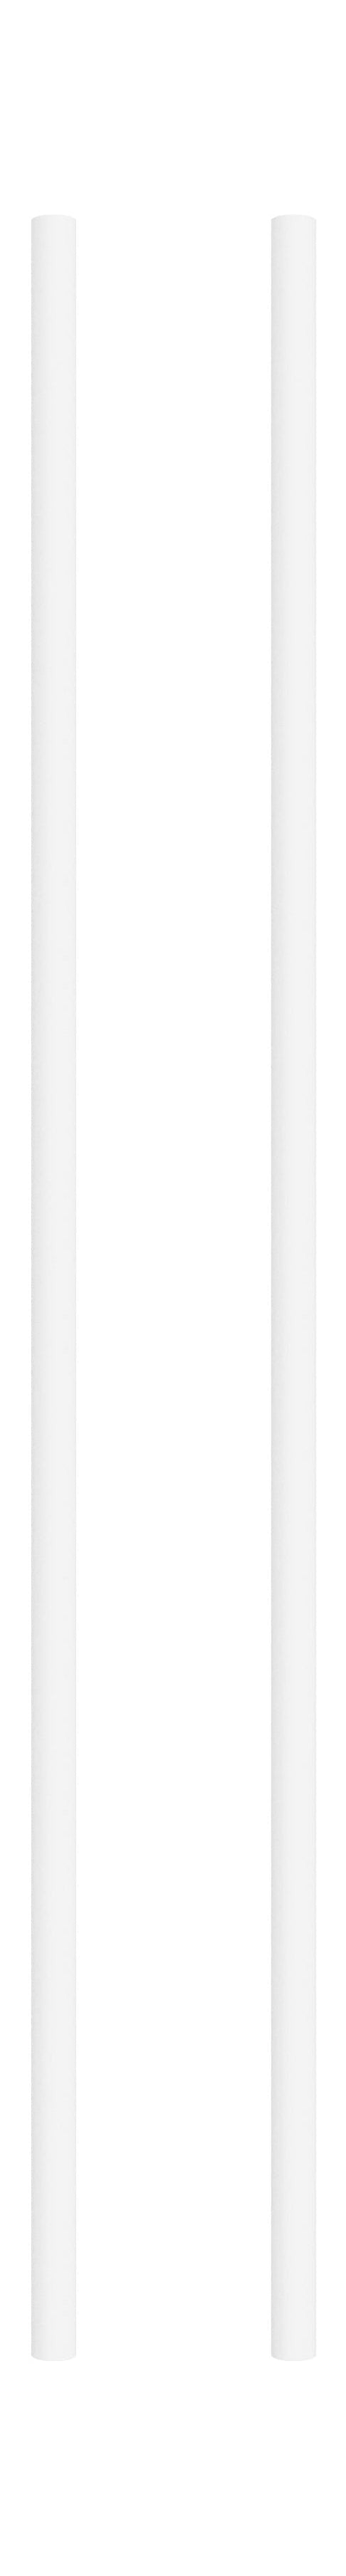 Moebe Regalsystem/Wandregalbein 85 cm Weiß, 2 Set von 2